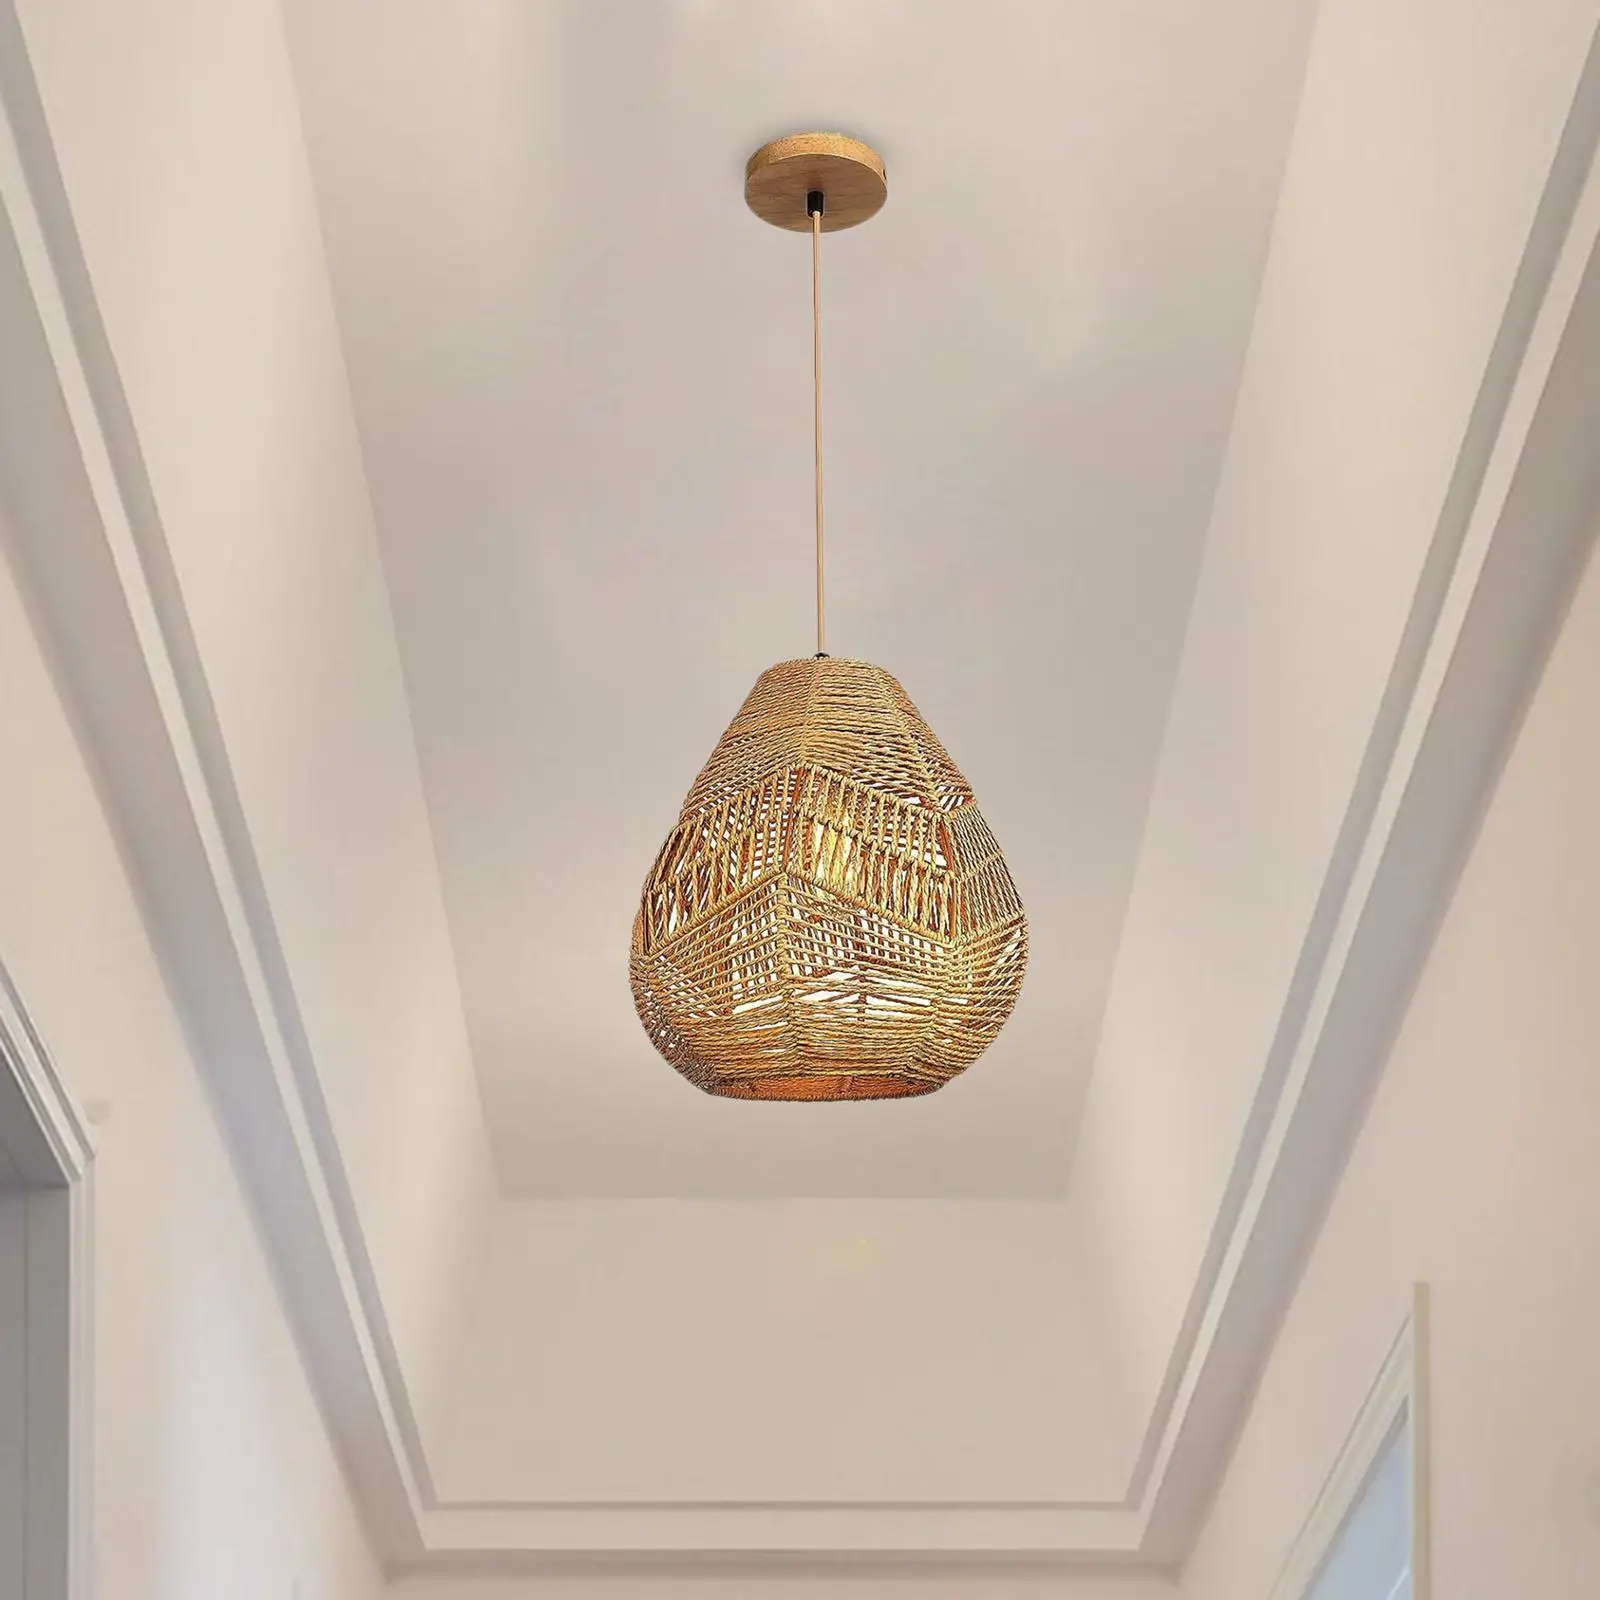 Подвесной абажур для замены защитной лампы для потолочного вентилятора, подвесной светильник для потолочного вентилятора, люстра для гостиной, ресторана Изображение 1